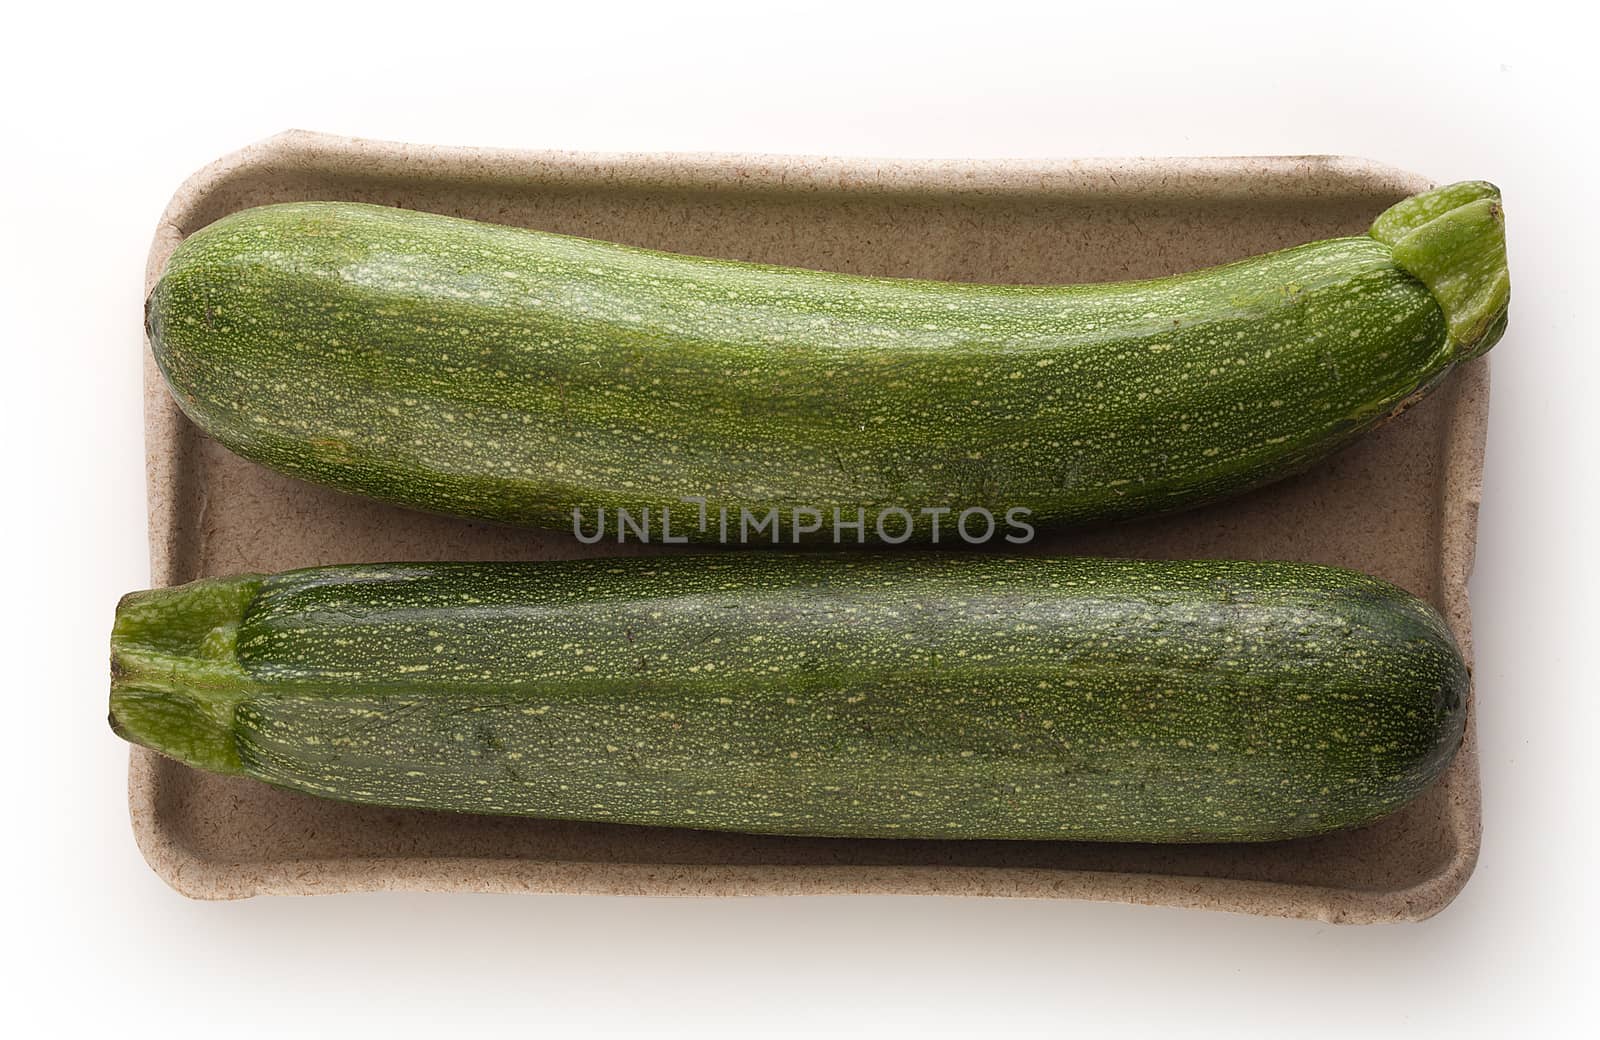 Two zucchini by Angorius